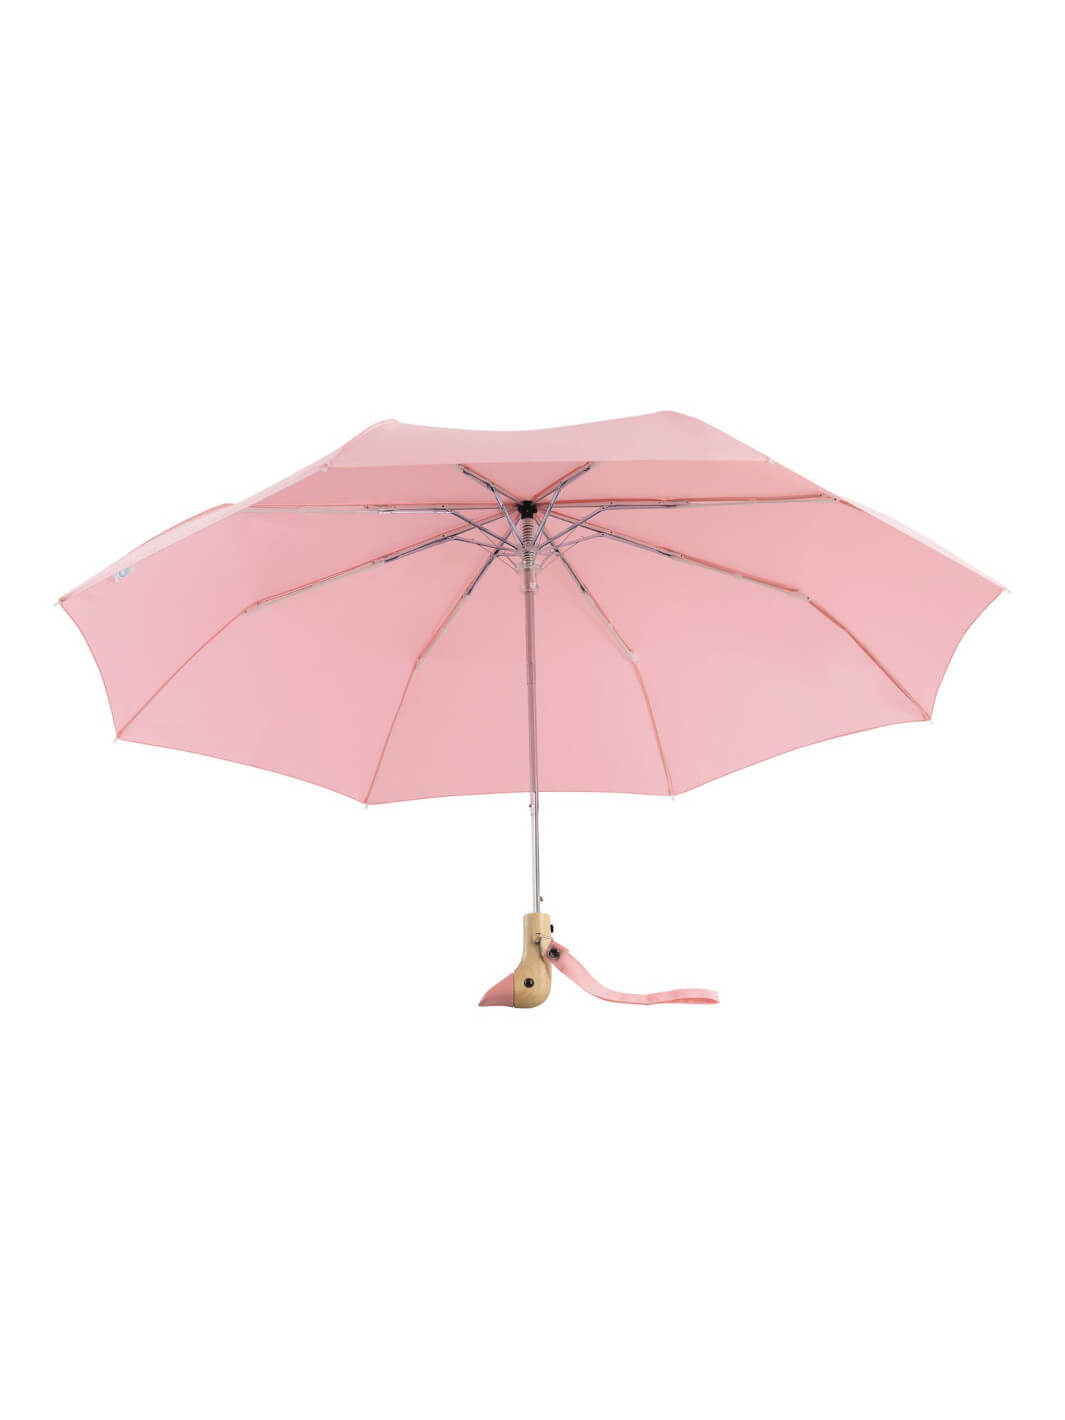 Orignal Duckhead compact umbrella pink